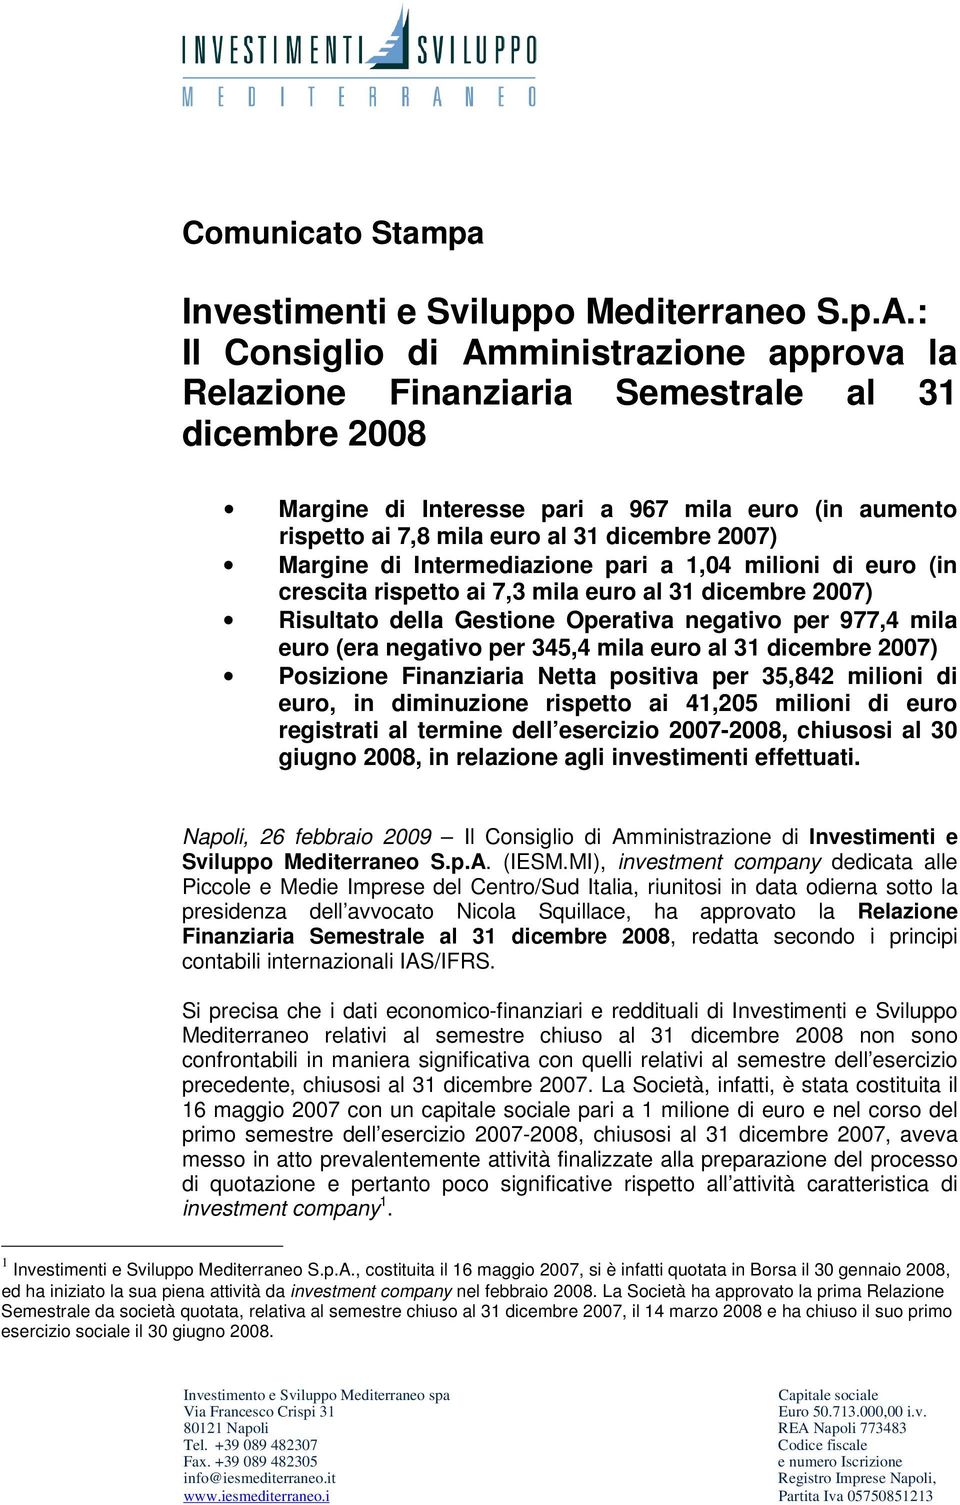 Margine di Intermediazione pari a 1,04 milioni di euro (in crescita rispetto ai 7,3 mila euro al 31 dicembre 2007) Risultato della Gestione Operativa negativo per 977,4 mila euro (era negativo per